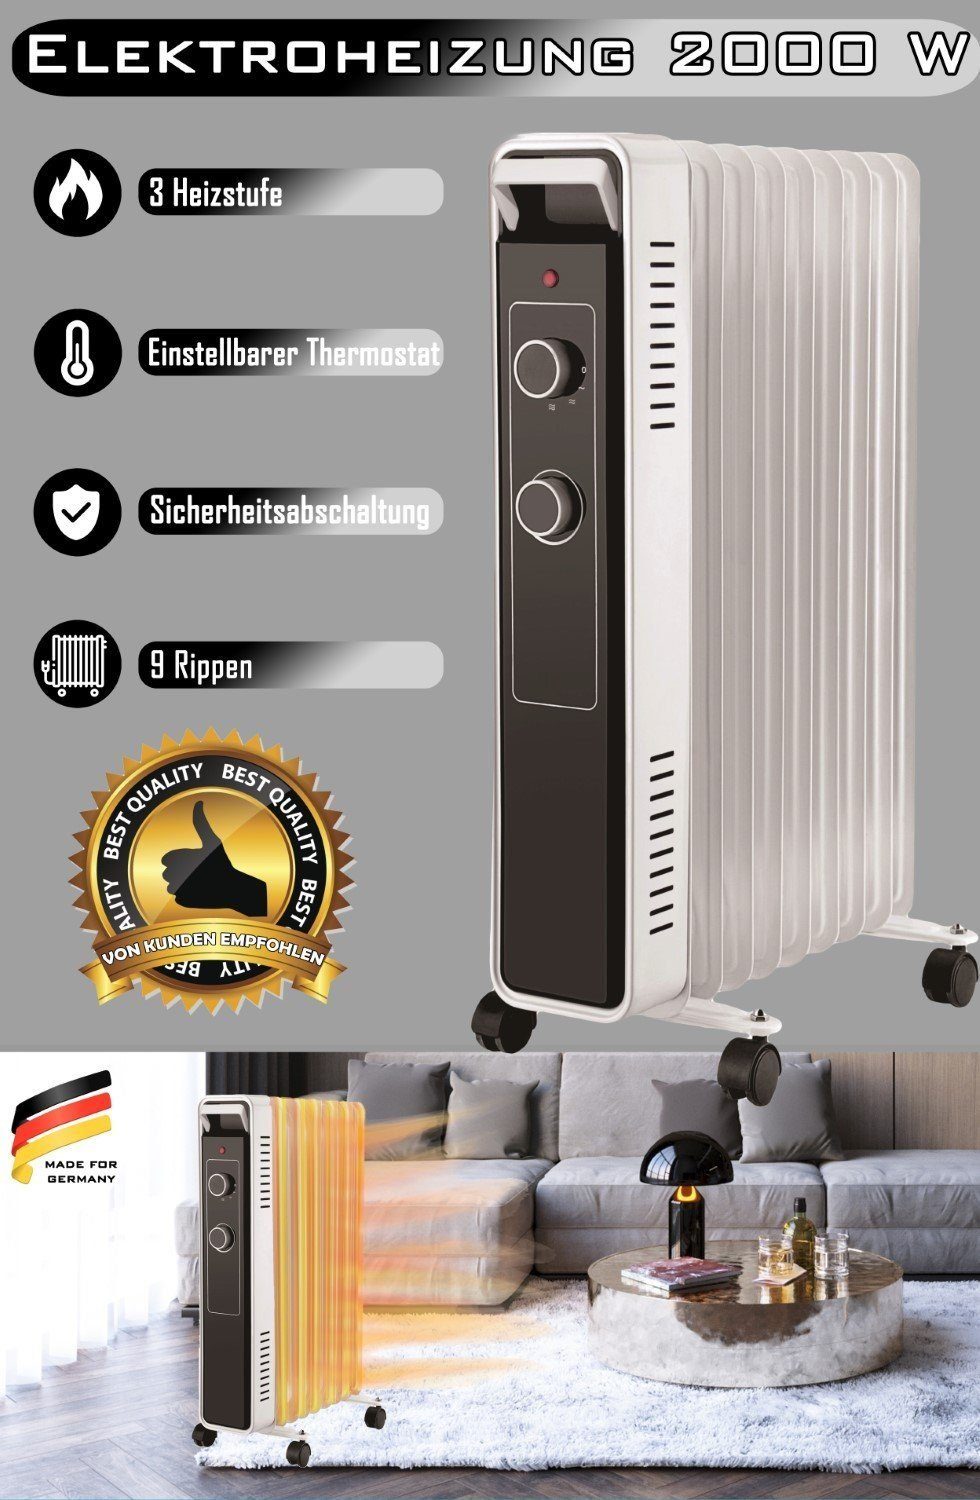 Trendmax Heizgerät Elektroheizung 2000 W mit 3 Heizstufen und einstellbarem Thermostat, 2000 W